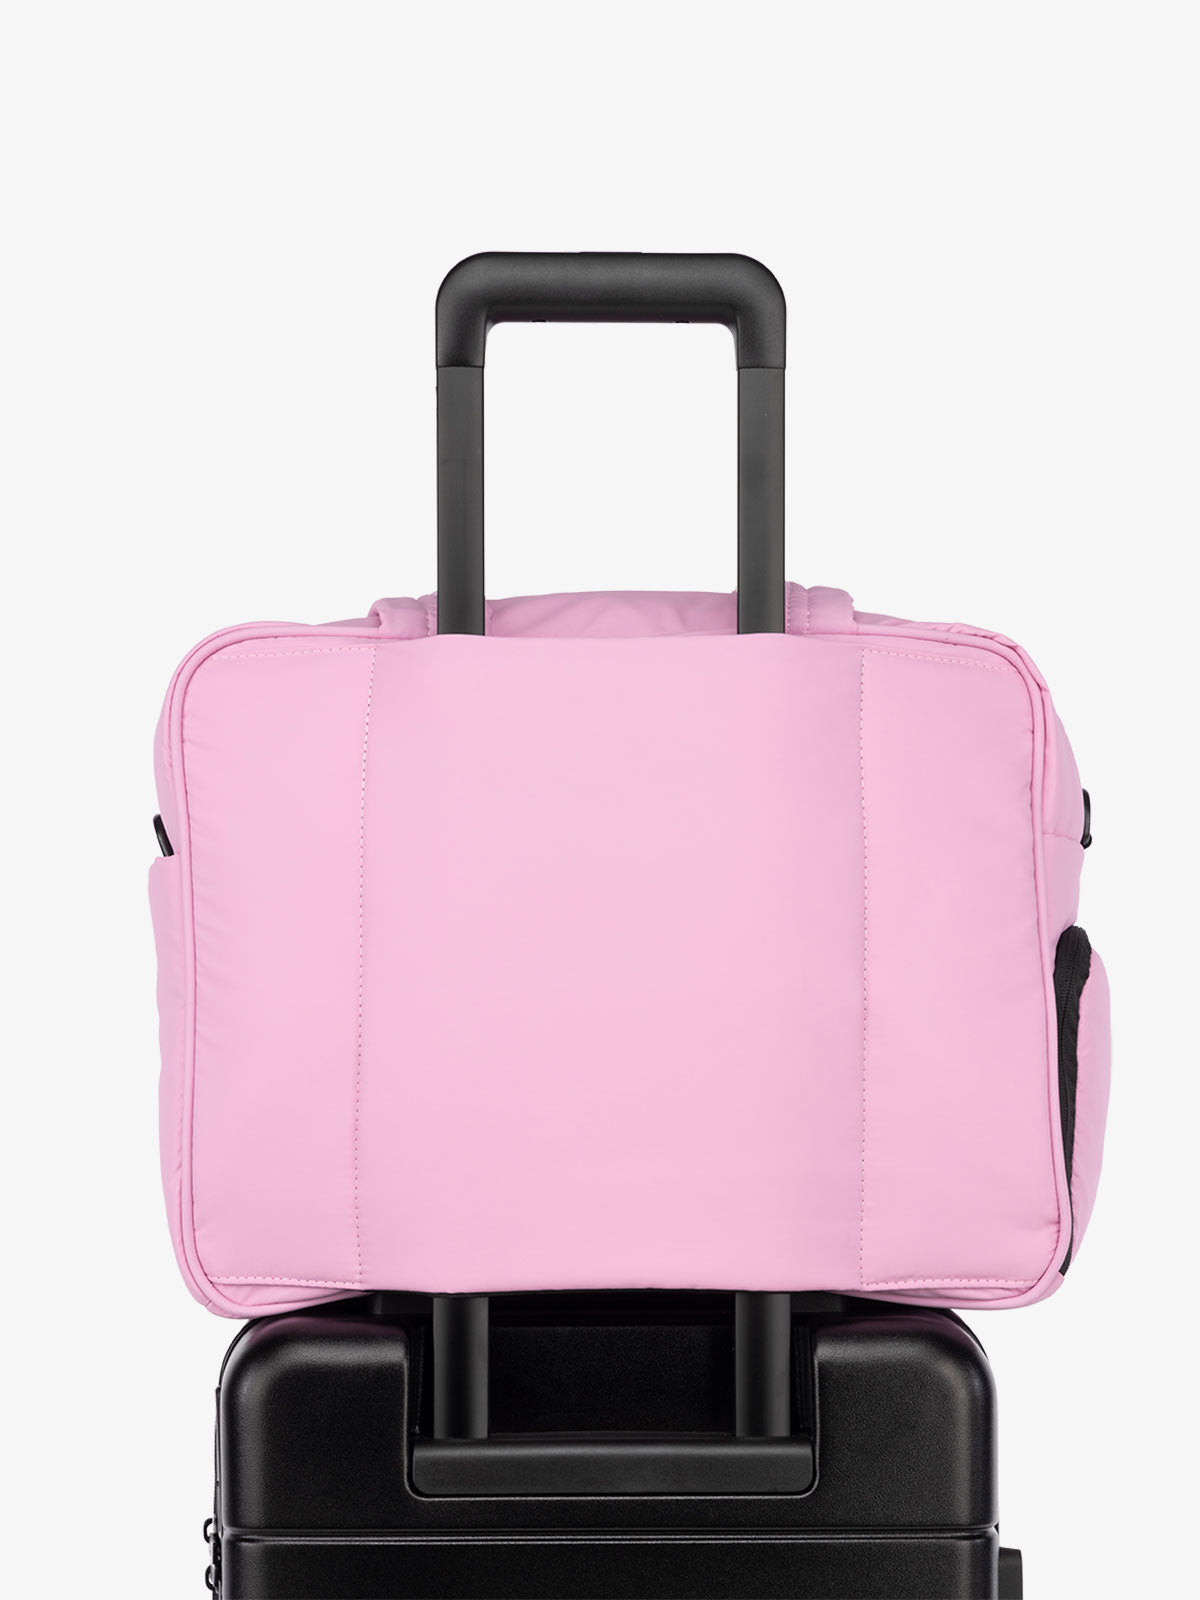 CALPAK Luka Weekender Duffel Bag with trolley sleeve for travel in pink